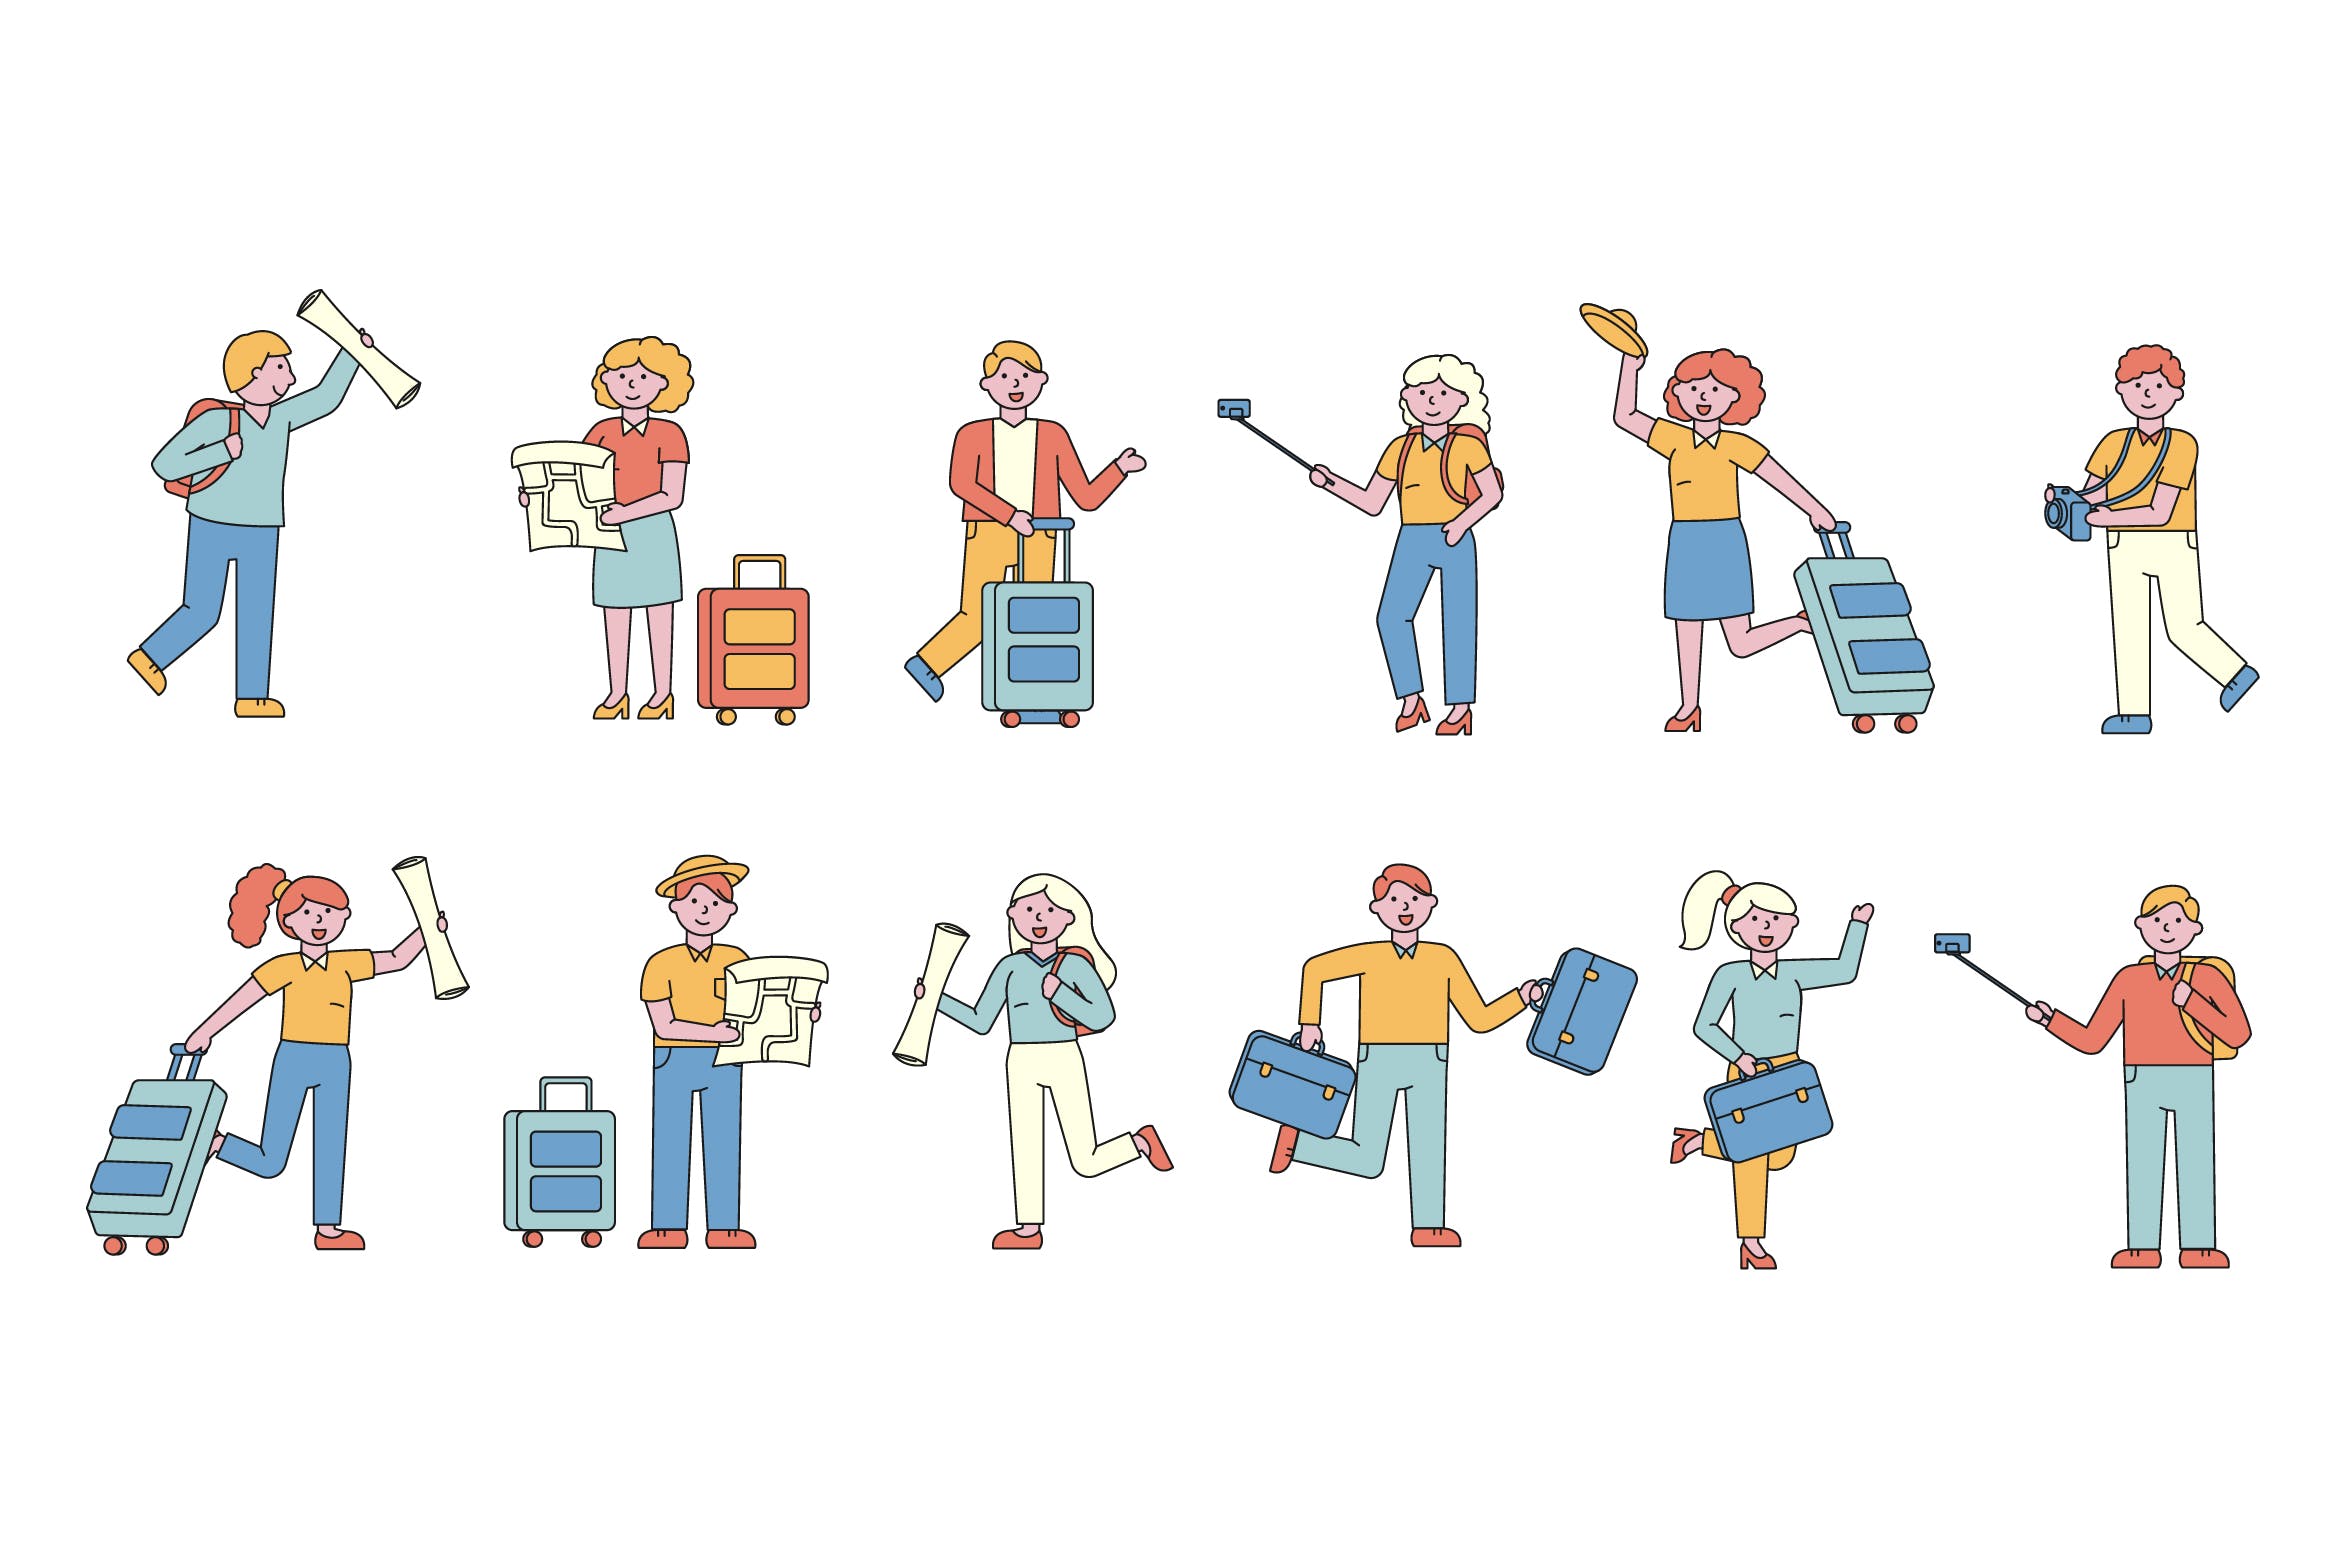 旅行人物形象线条艺术矢量插画16图库精选素材 Tourists Lineart People Character Collection插图